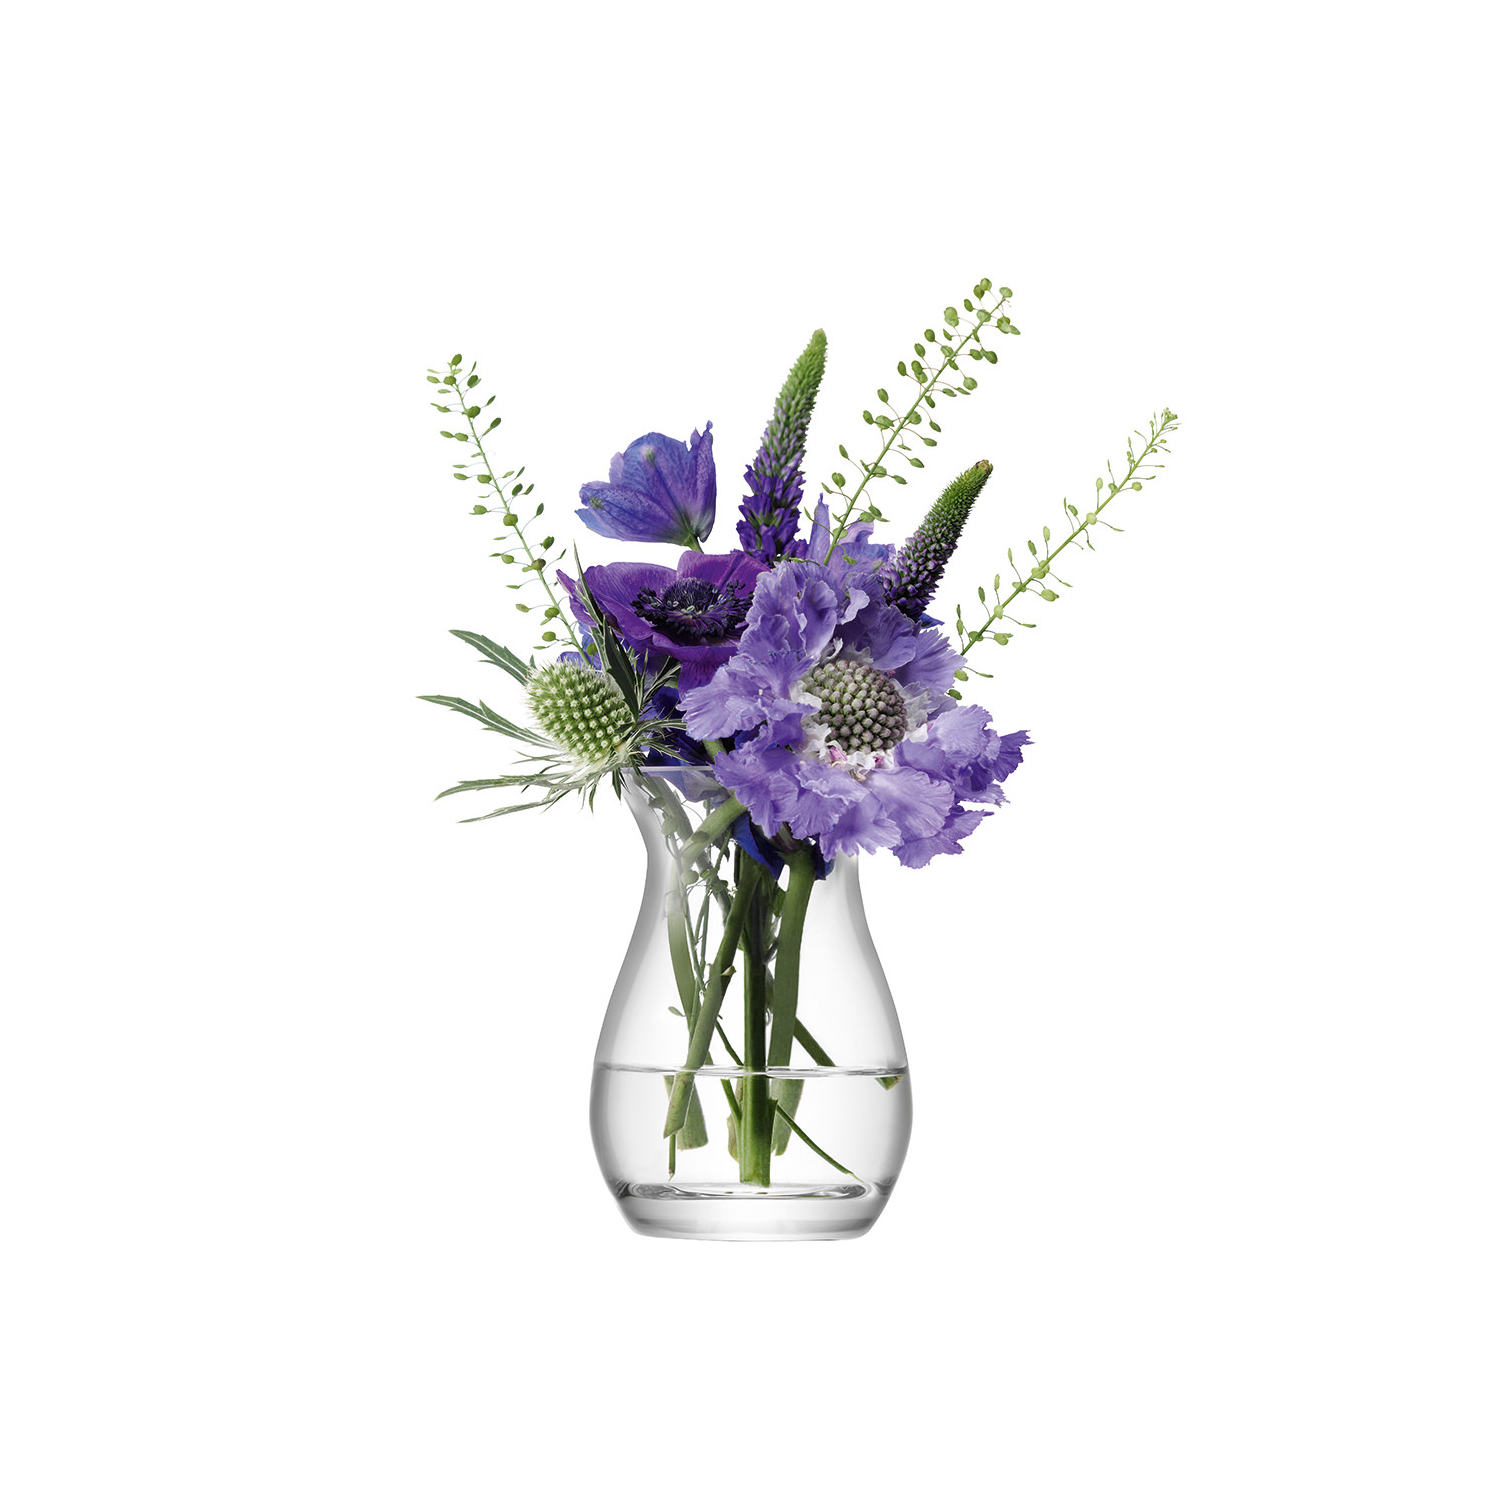 Flower Posy Vase